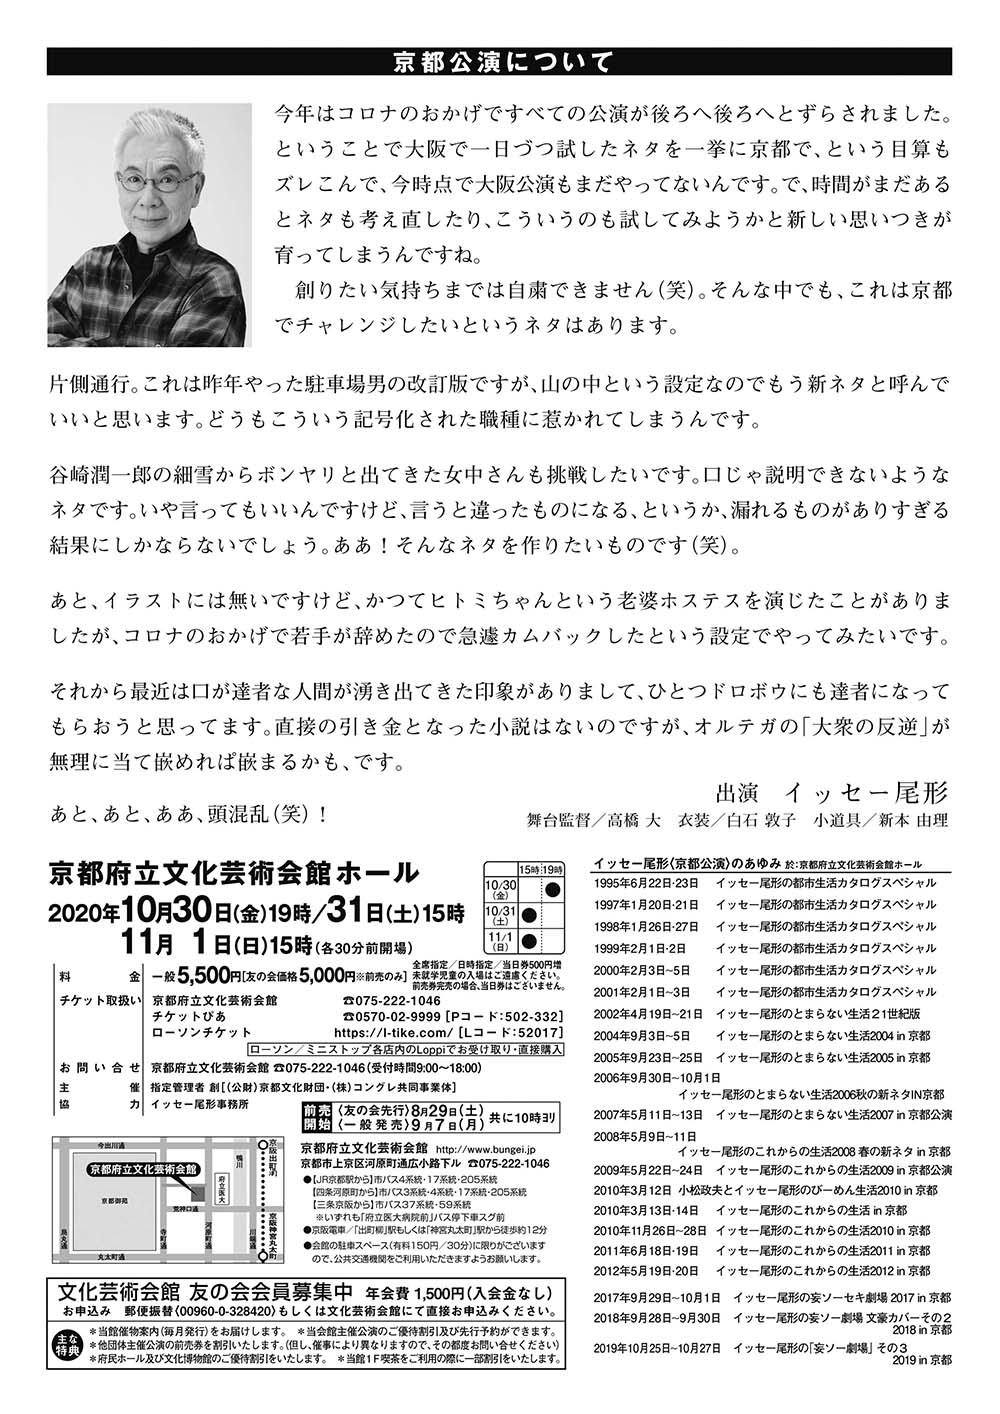 『イッセー尾形の一人芝居「妄ソー劇場」 その4 2020 in 京都』